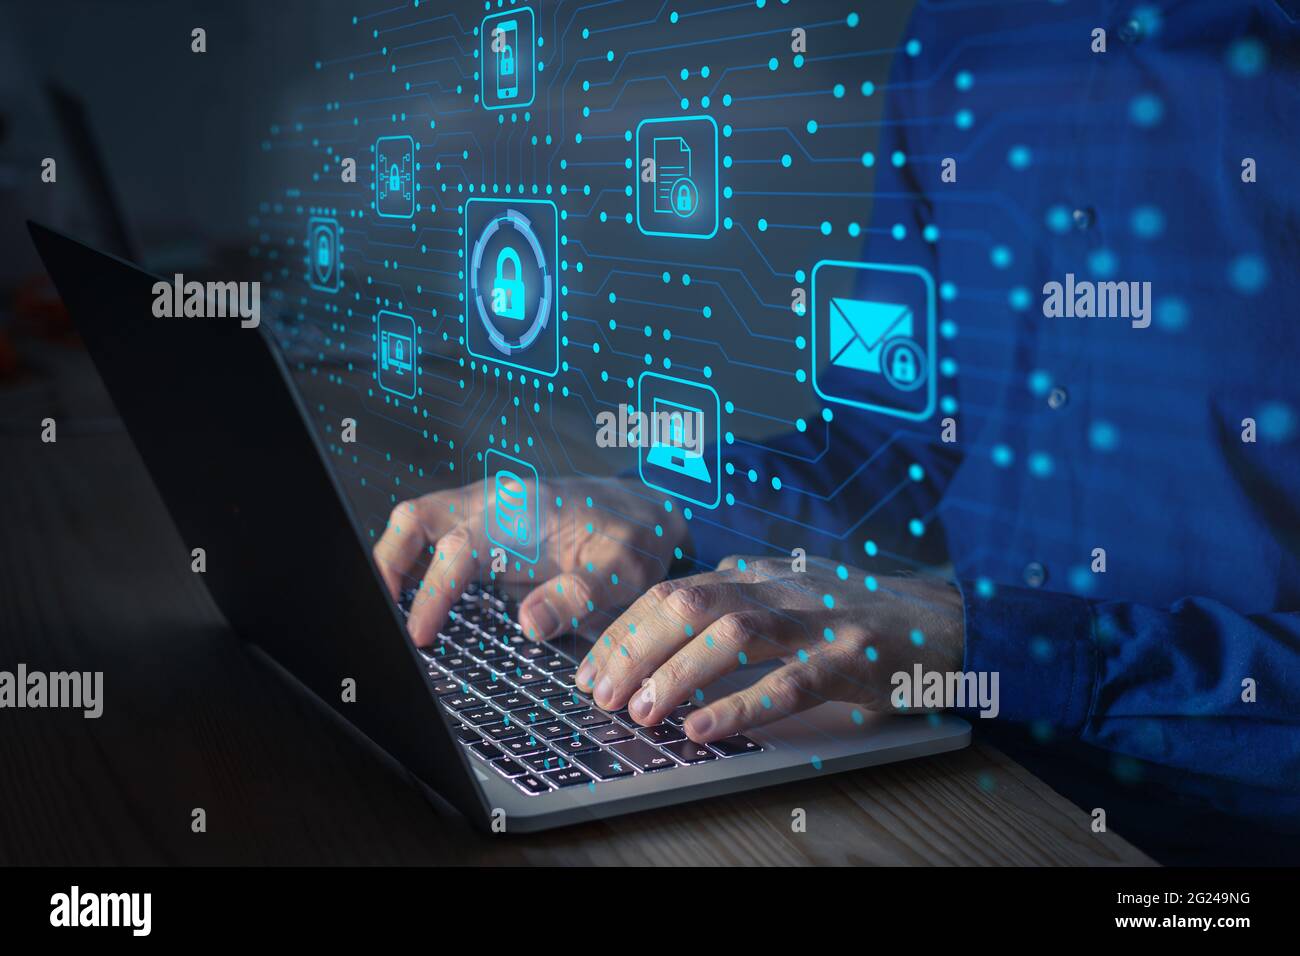 Tecnico IT per la sicurezza informatica che lavora per proteggere la rete dagli attacchi informatici da parte degli hacker su Internet. Accesso sicuro per la privacy online e la d Foto Stock